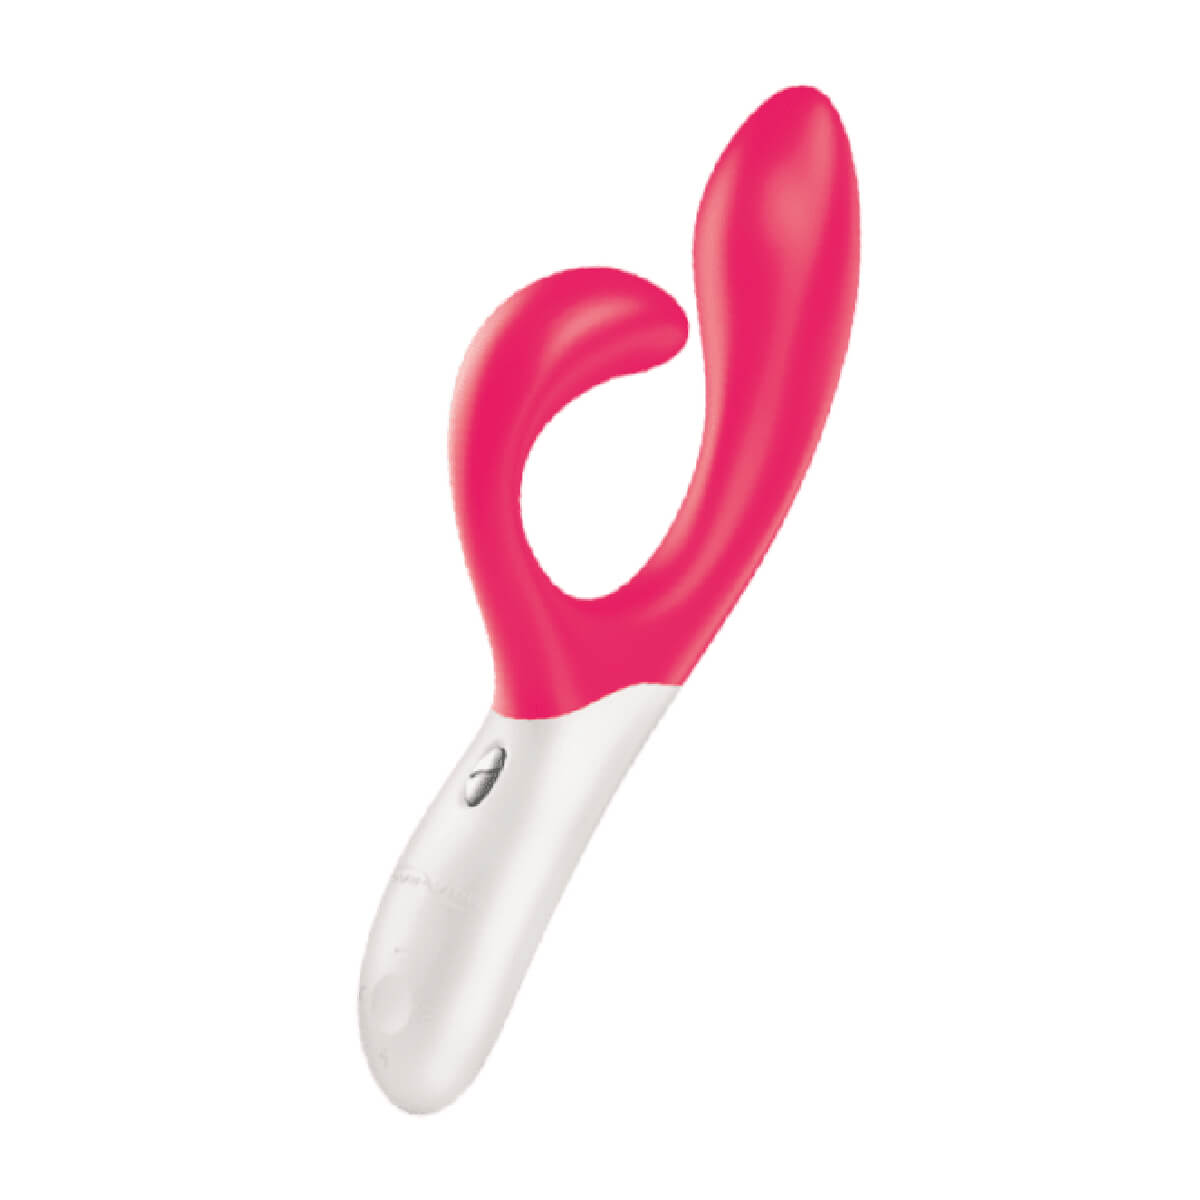 The G-Spot clitoris rabbit vibrator Nova by We-Vibe - Product image